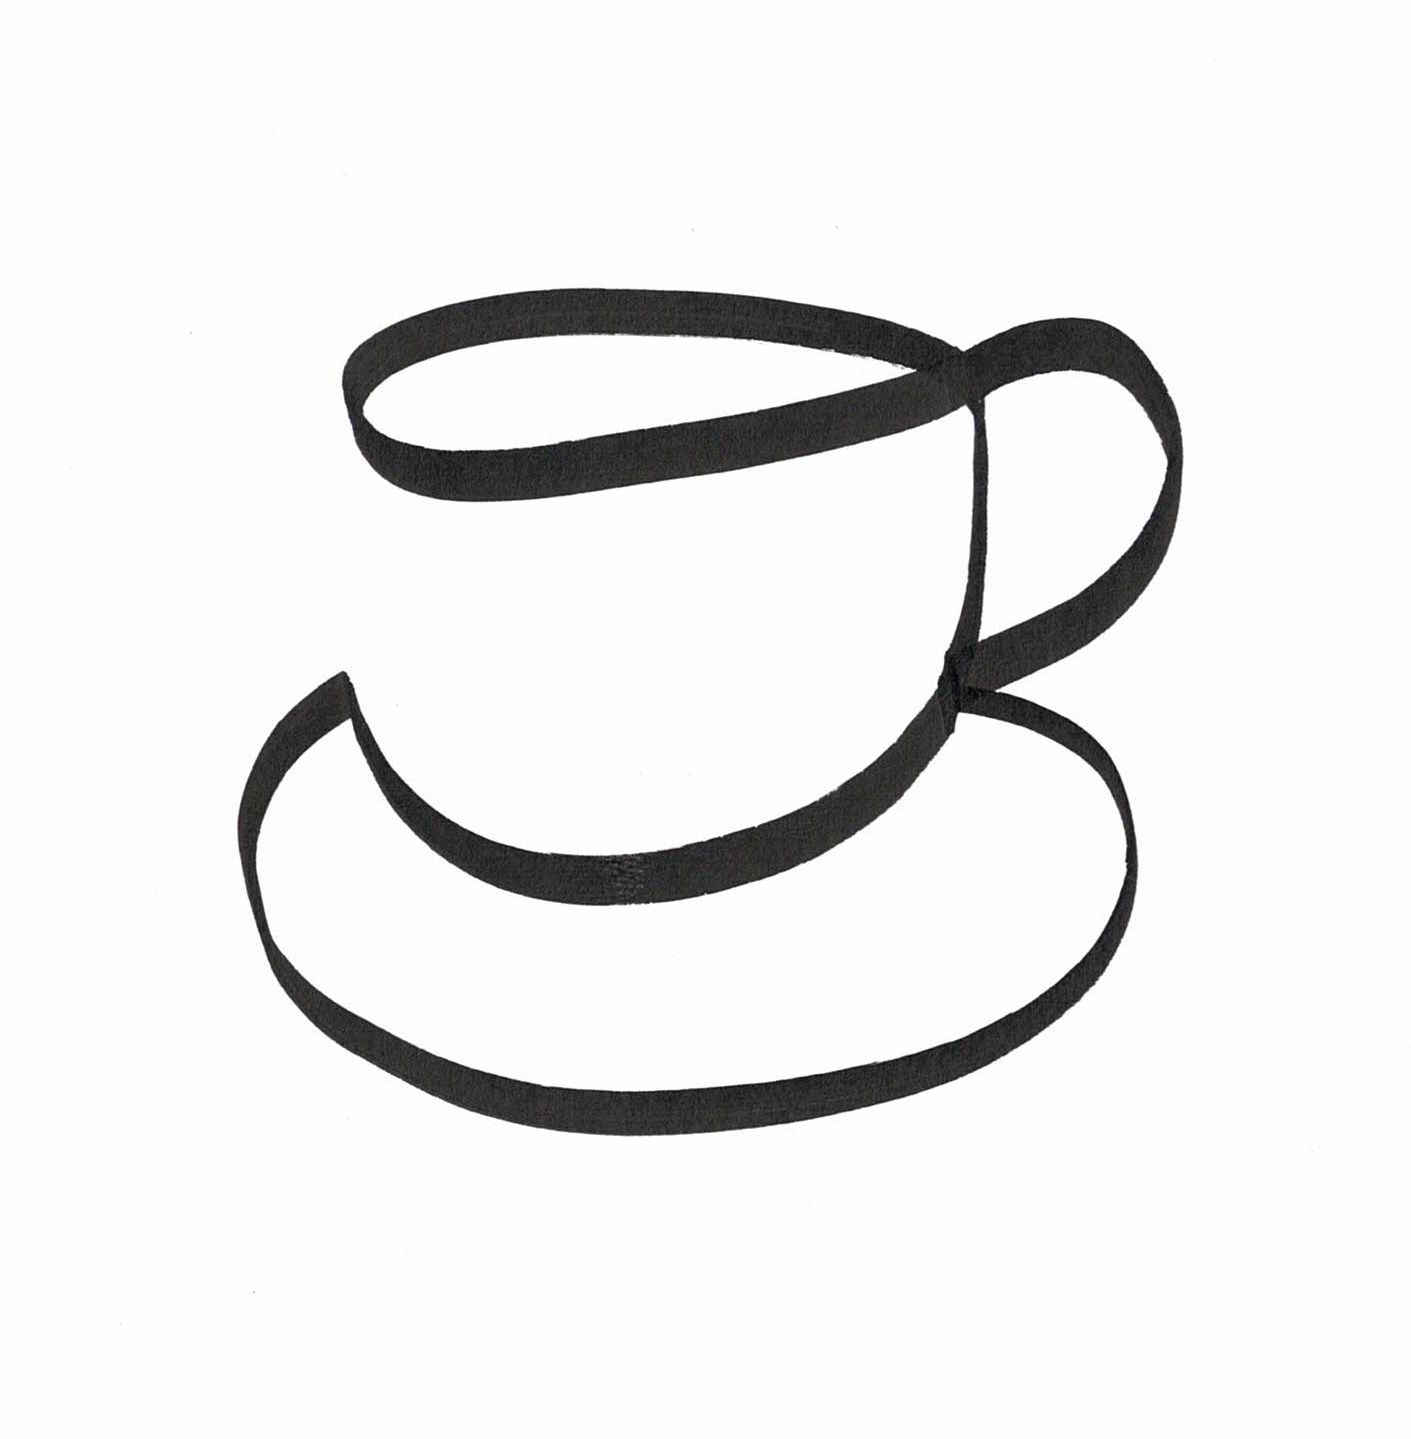 Kloss im Hals Trinken (Skizze: Kaffeetasse/Teetasse auf Unterteller in einem Strich gezeichnet)